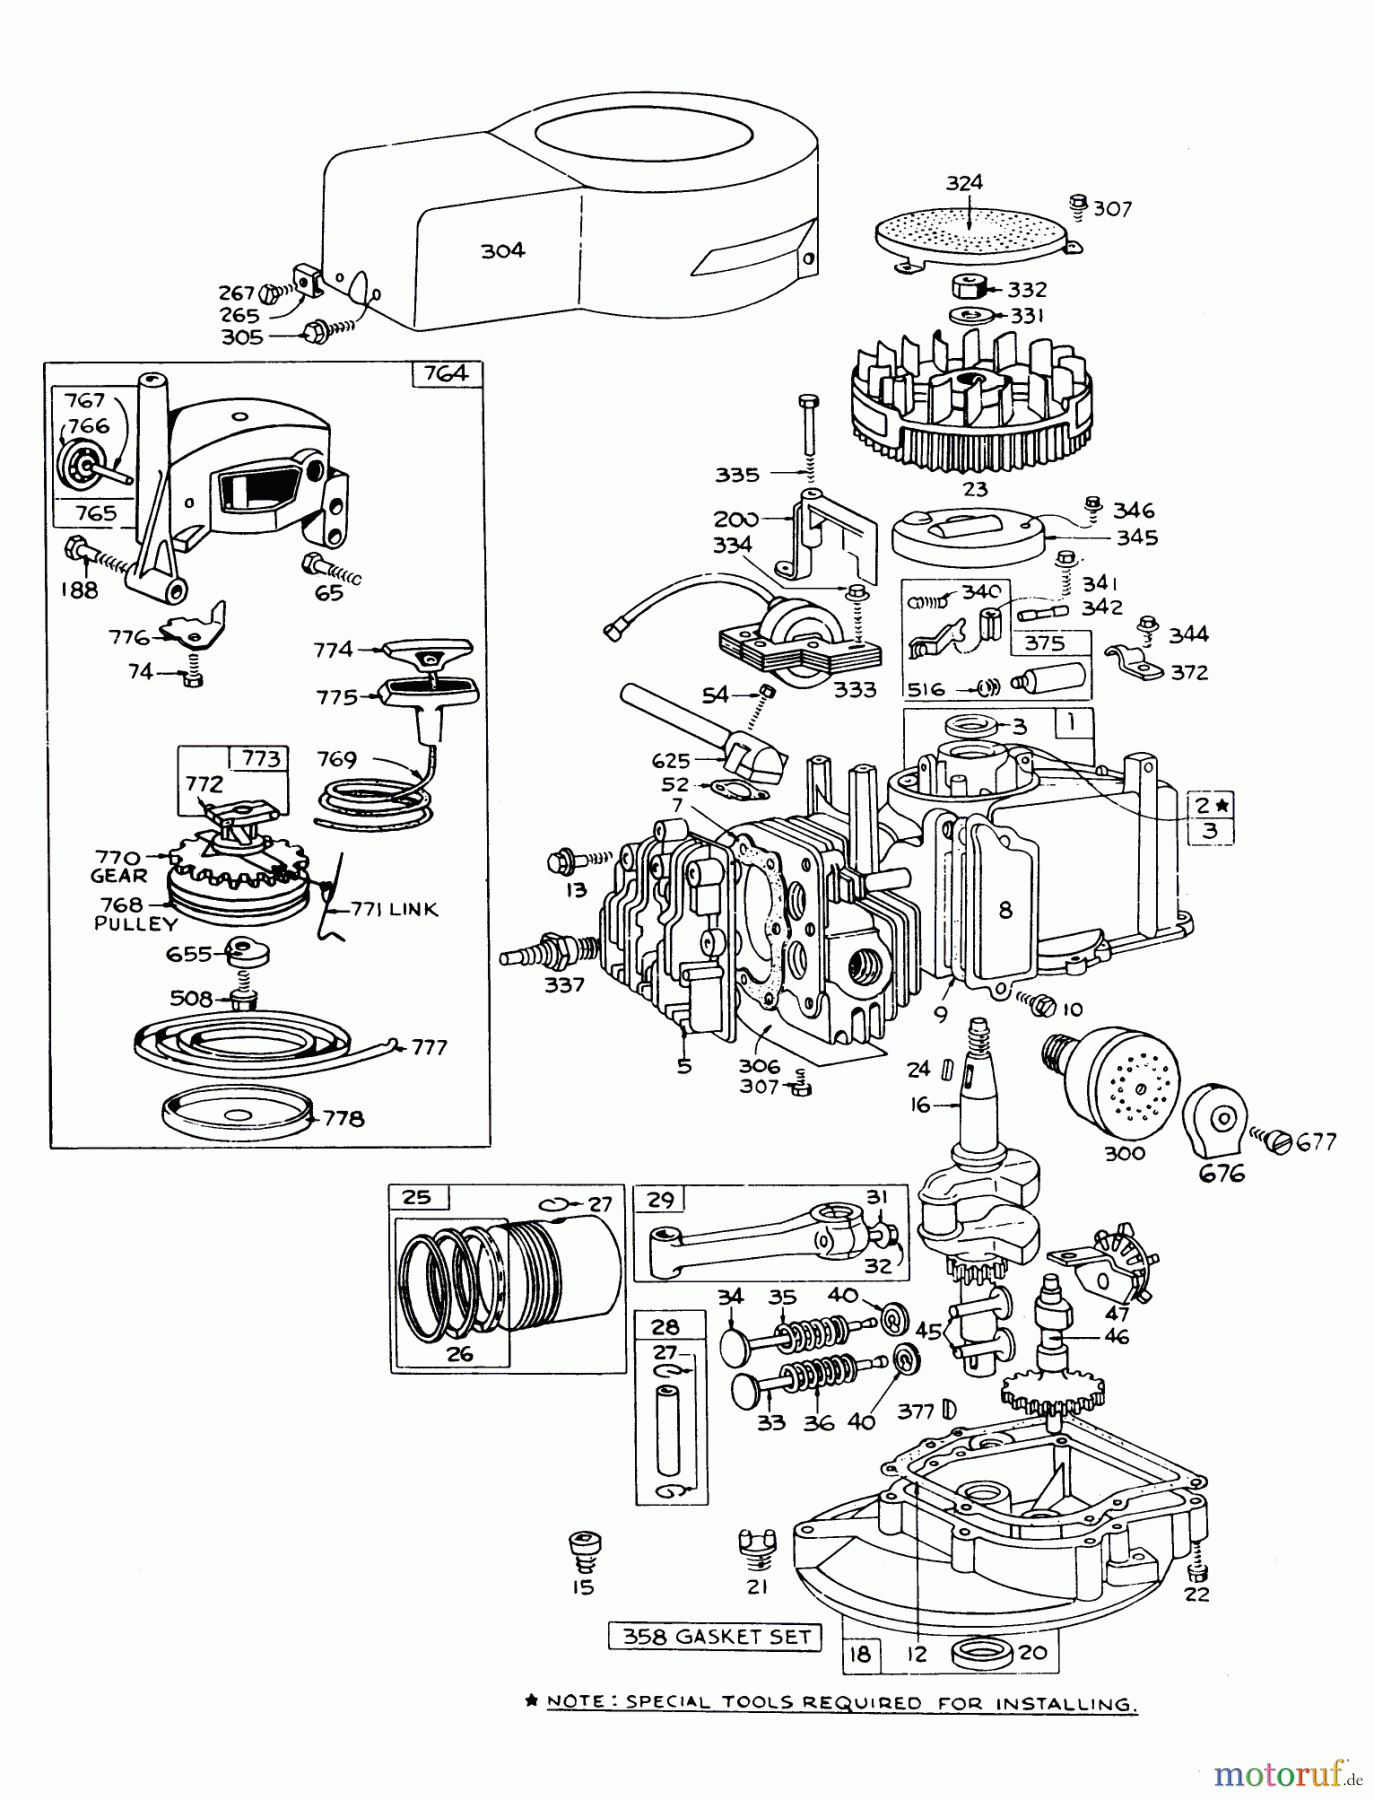  Toro Neu Mowers, Walk-Behind Seite 1 16277 - Toro Whirlwind Lawnmower, 1978 (8000001-8999999) ENGINE BRIGGS & STRATTON MODEL 92508-0954-01 FOR 19